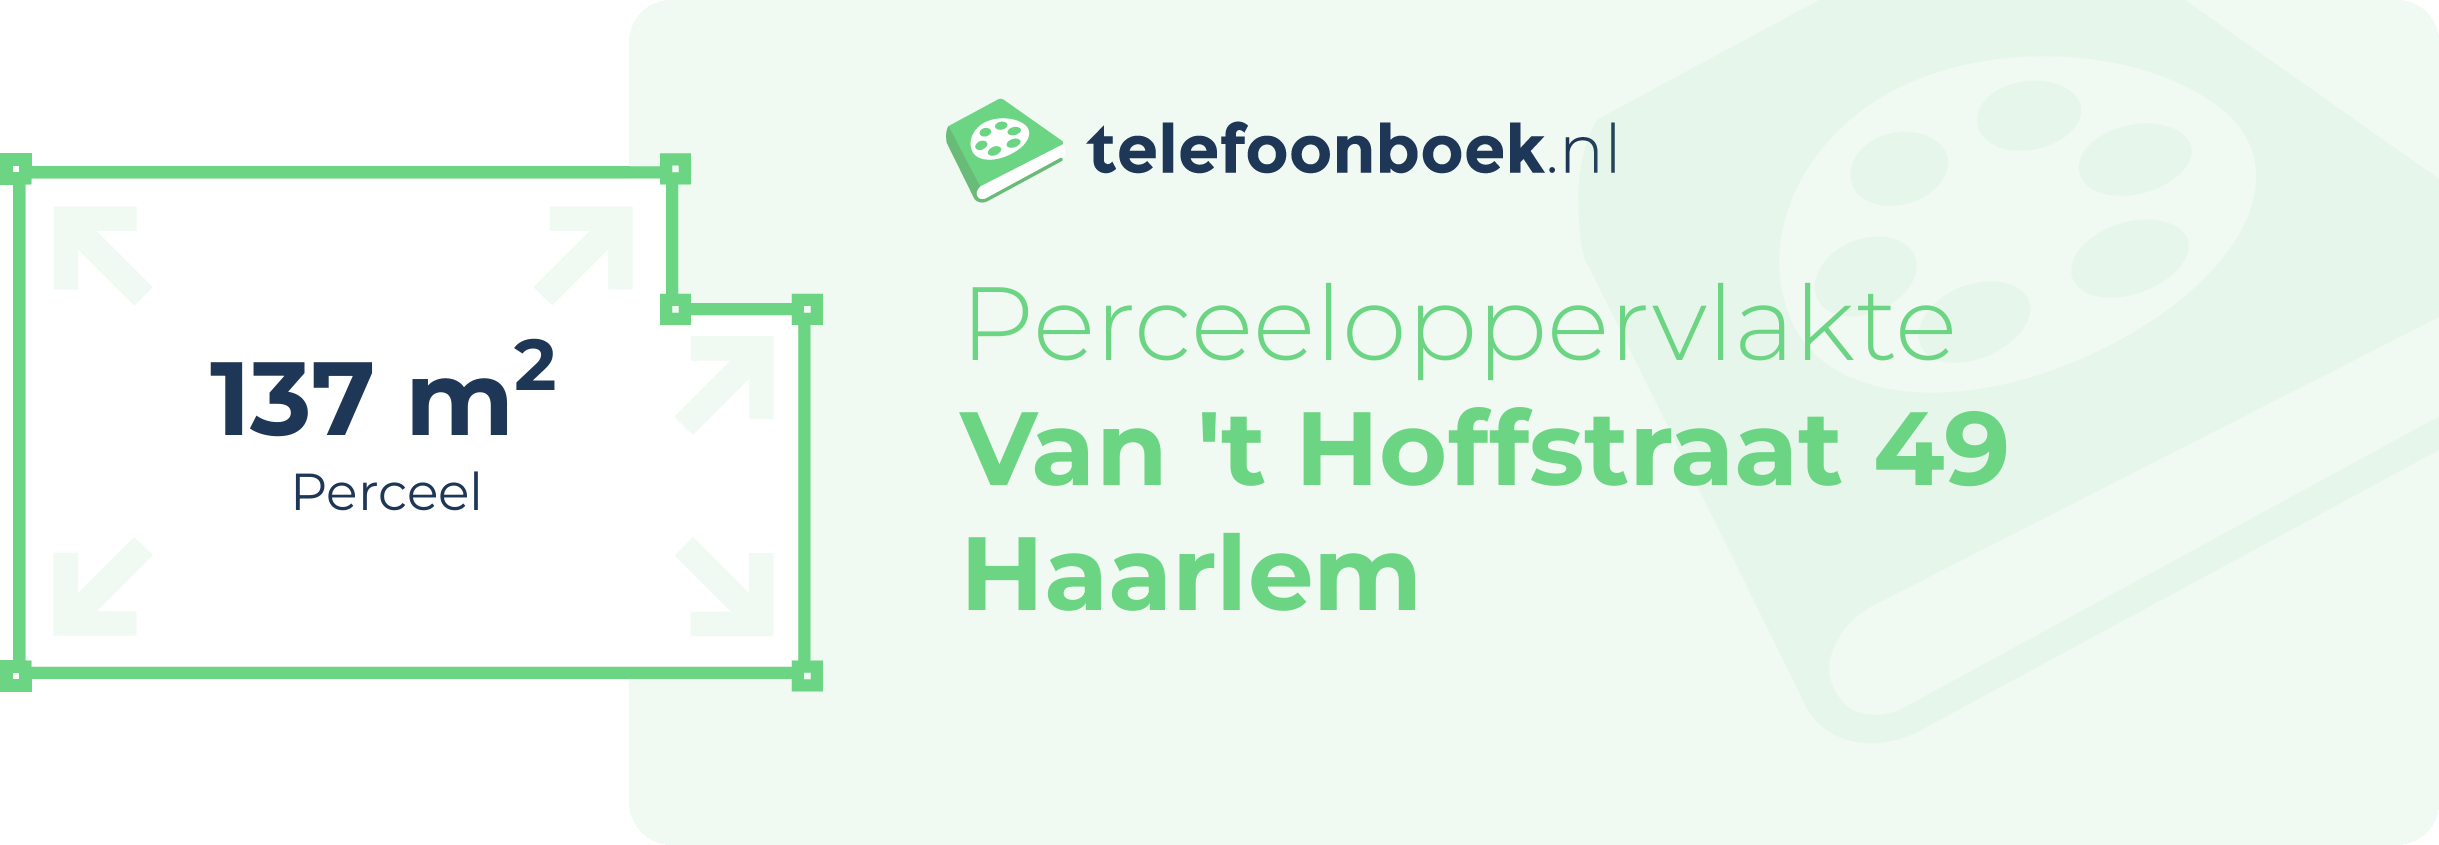 Perceeloppervlakte Van 't Hoffstraat 49 Haarlem